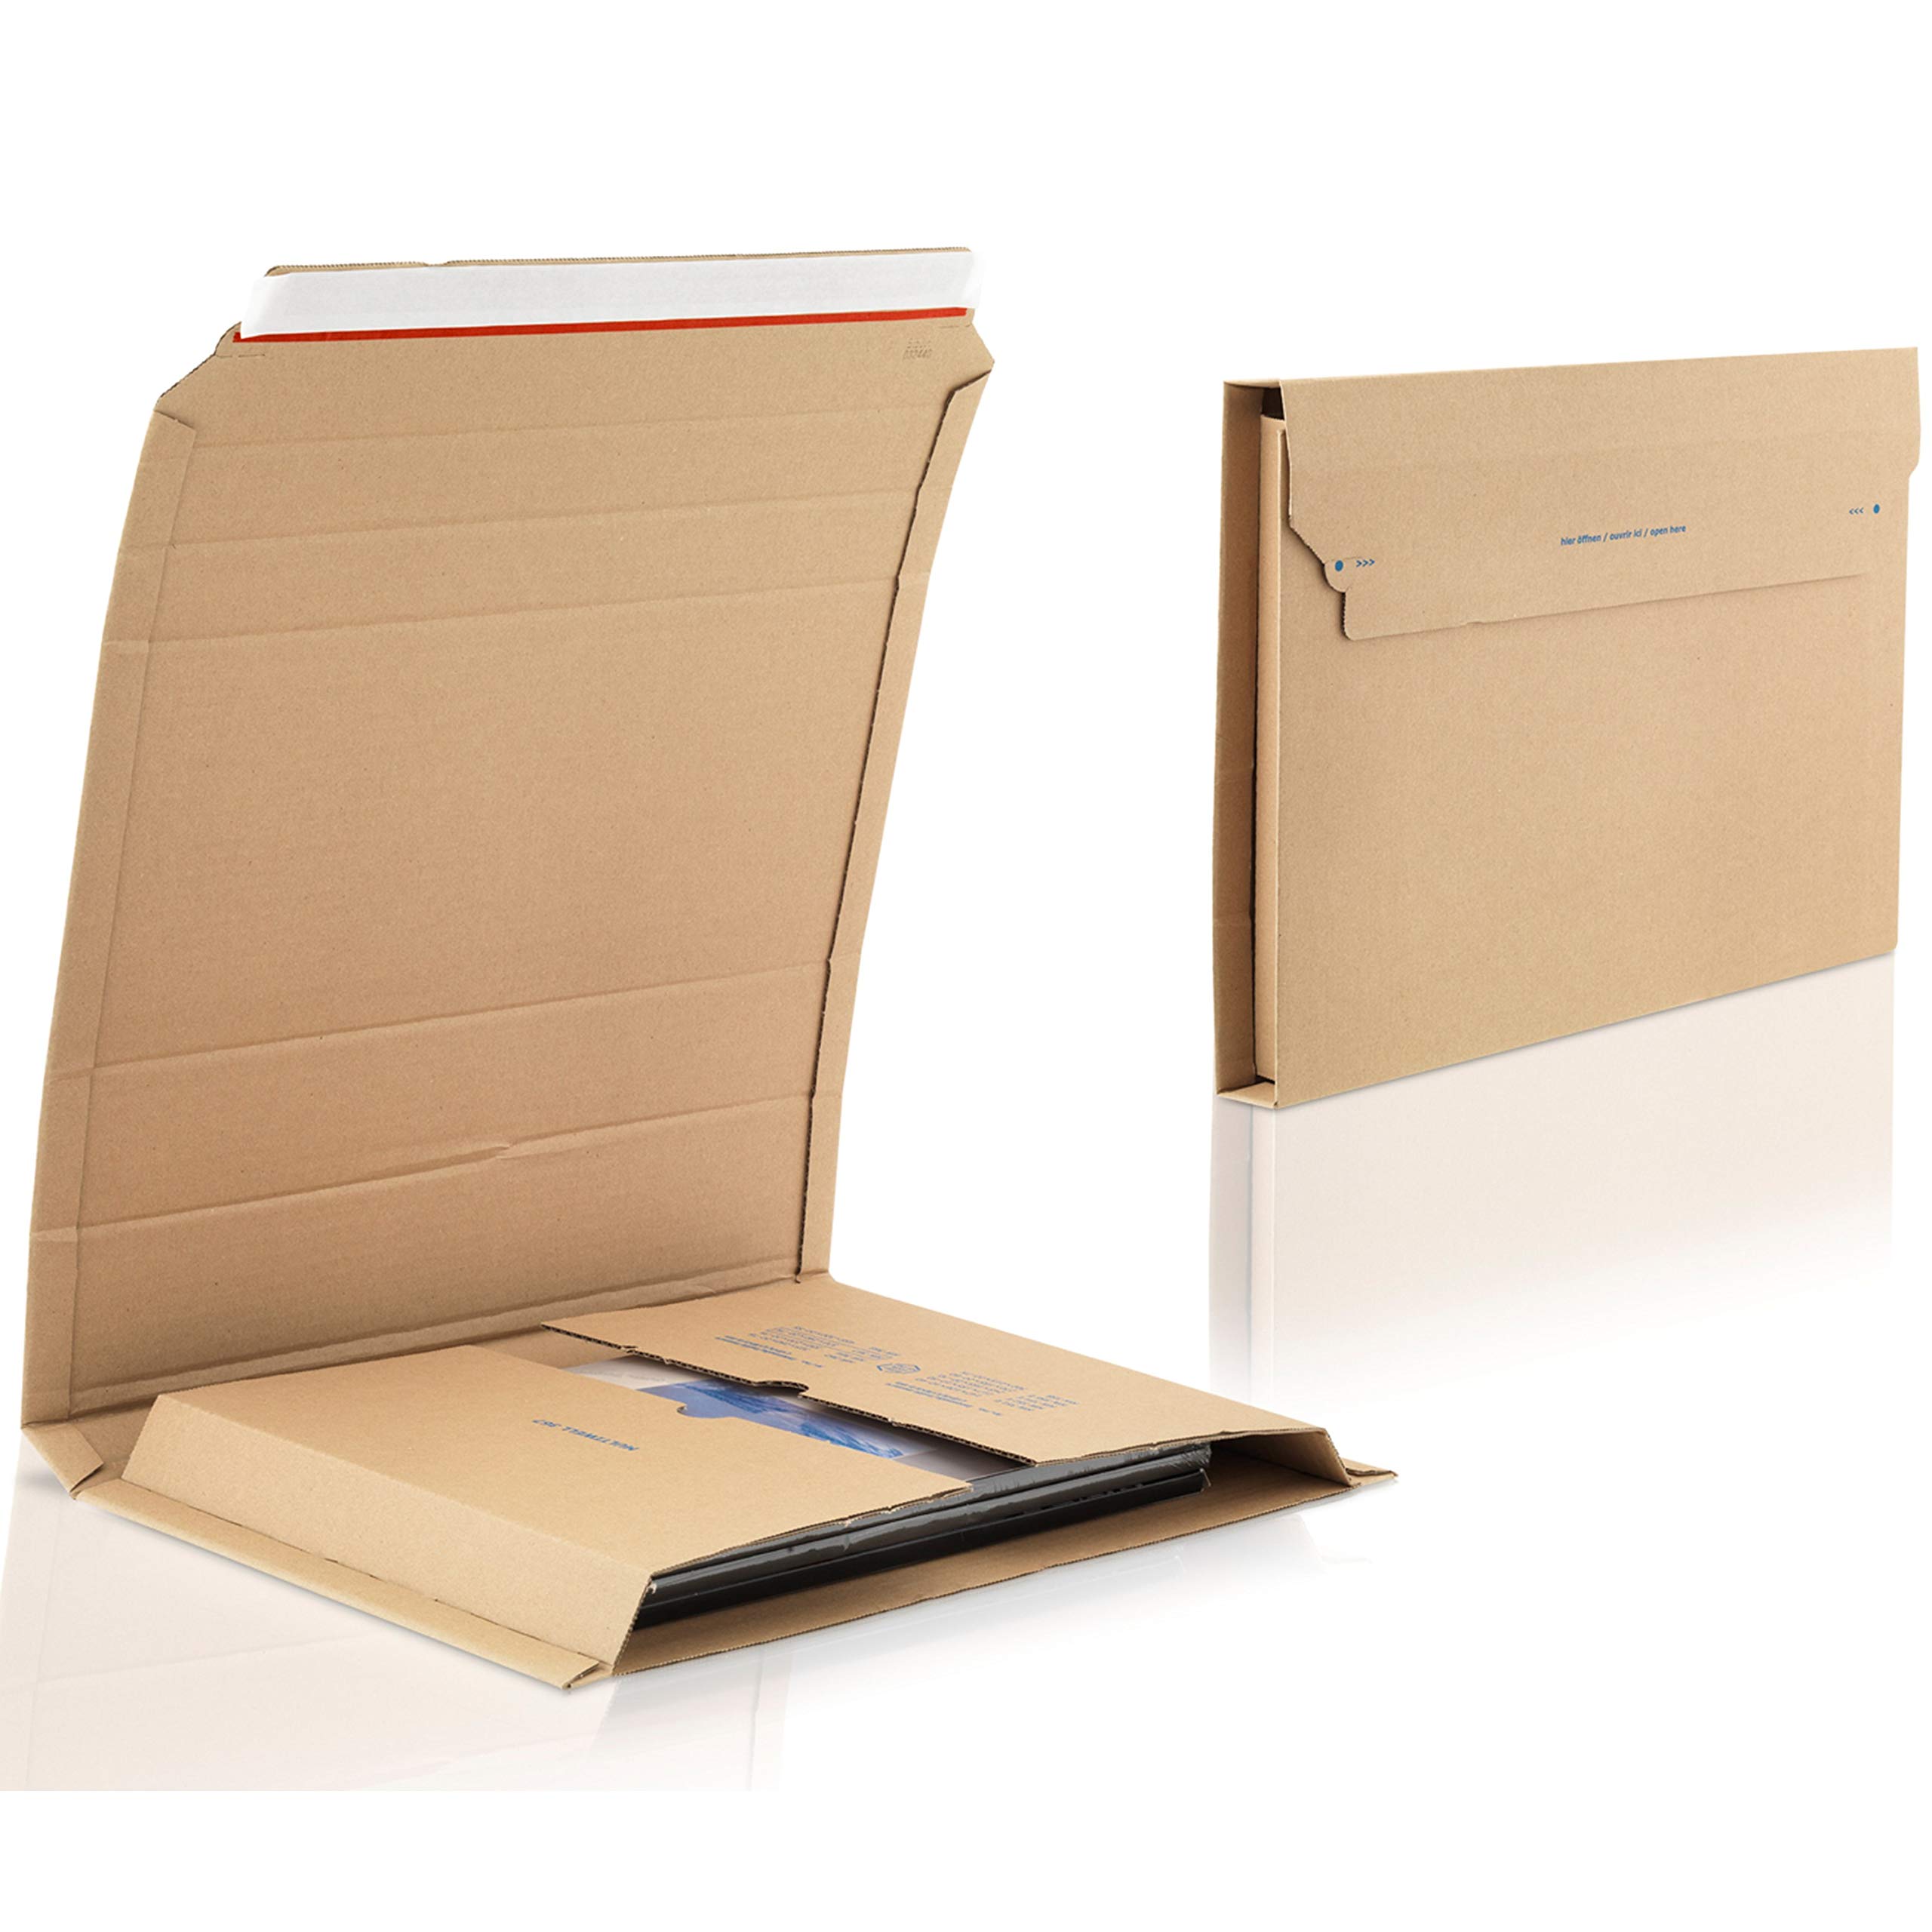 WPTrading - 100 Stück Wellpappe Buchverpackung DIN B4 370 x 290 x 75 mm (MW367) selbstklebend Braun - Buch Karton Wickelverpackung für Büchersendung - Maxibriefkarton für Bücher- und Warensendung